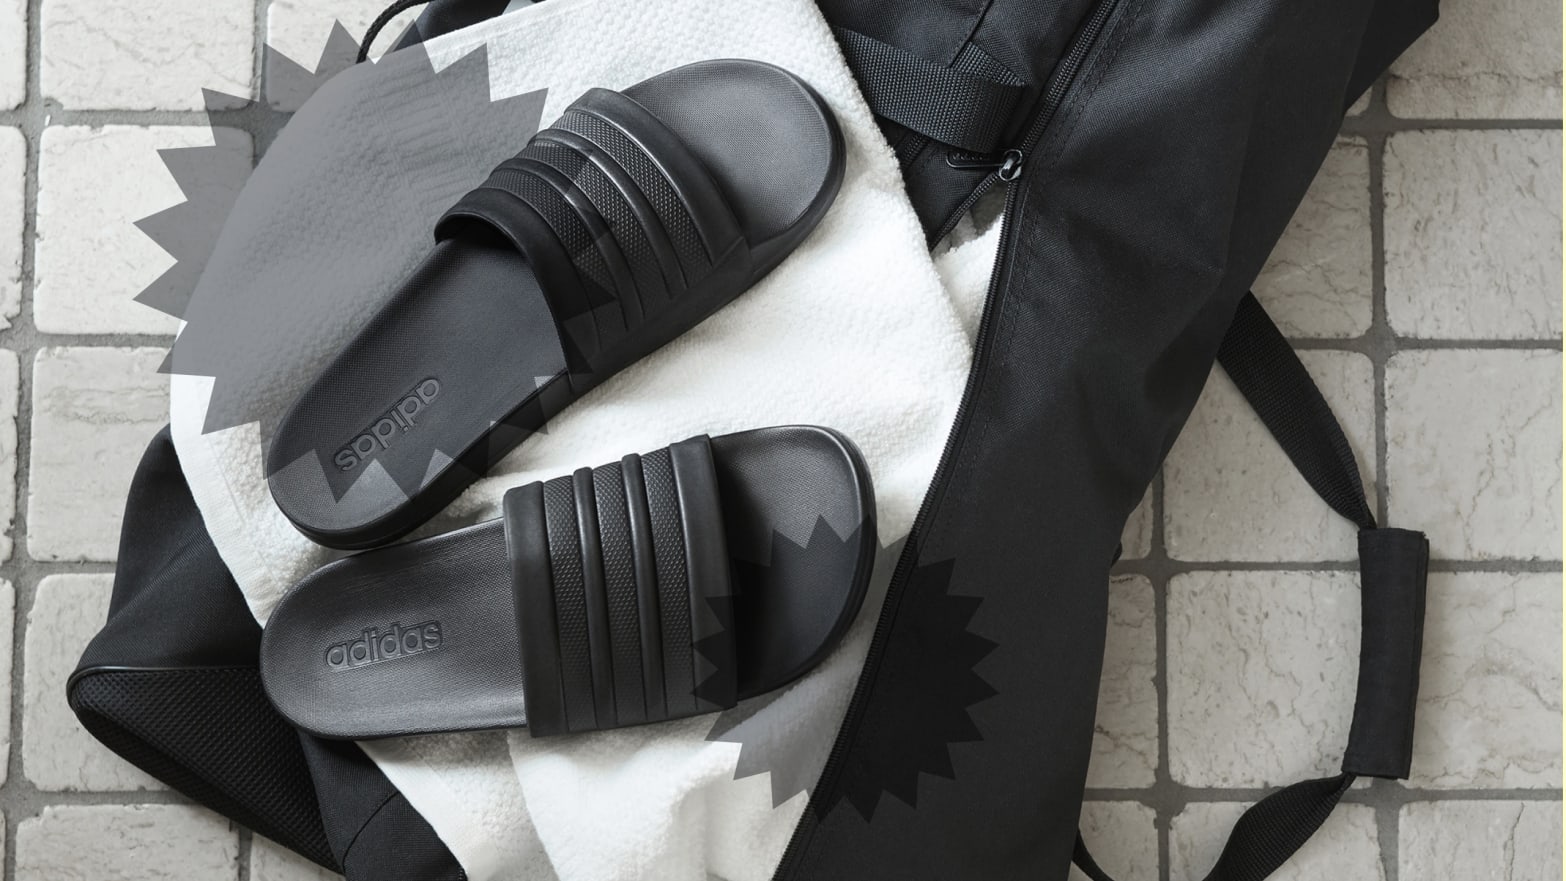 Onvoorziene omstandigheden Stuwkracht natuurlijk Adidas Adilette Comfort Slides Review